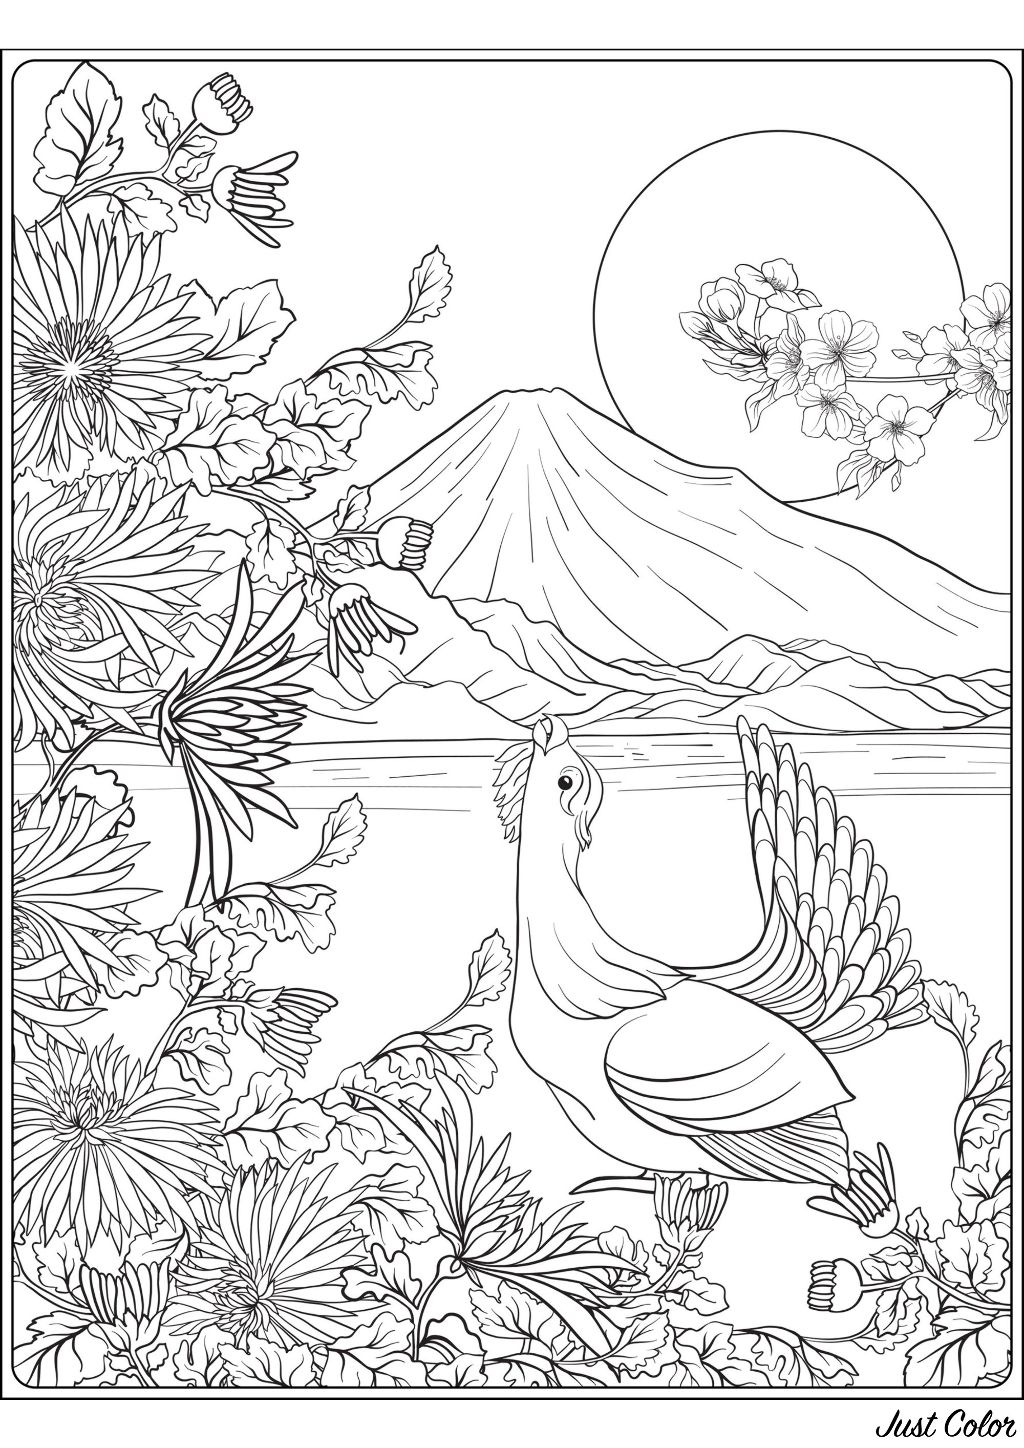 Un superbe coloriage sur le thème du Japon, avec un oiseau, le Mont Fuji, et un premier plan rempli de jolies plantes et fleurs